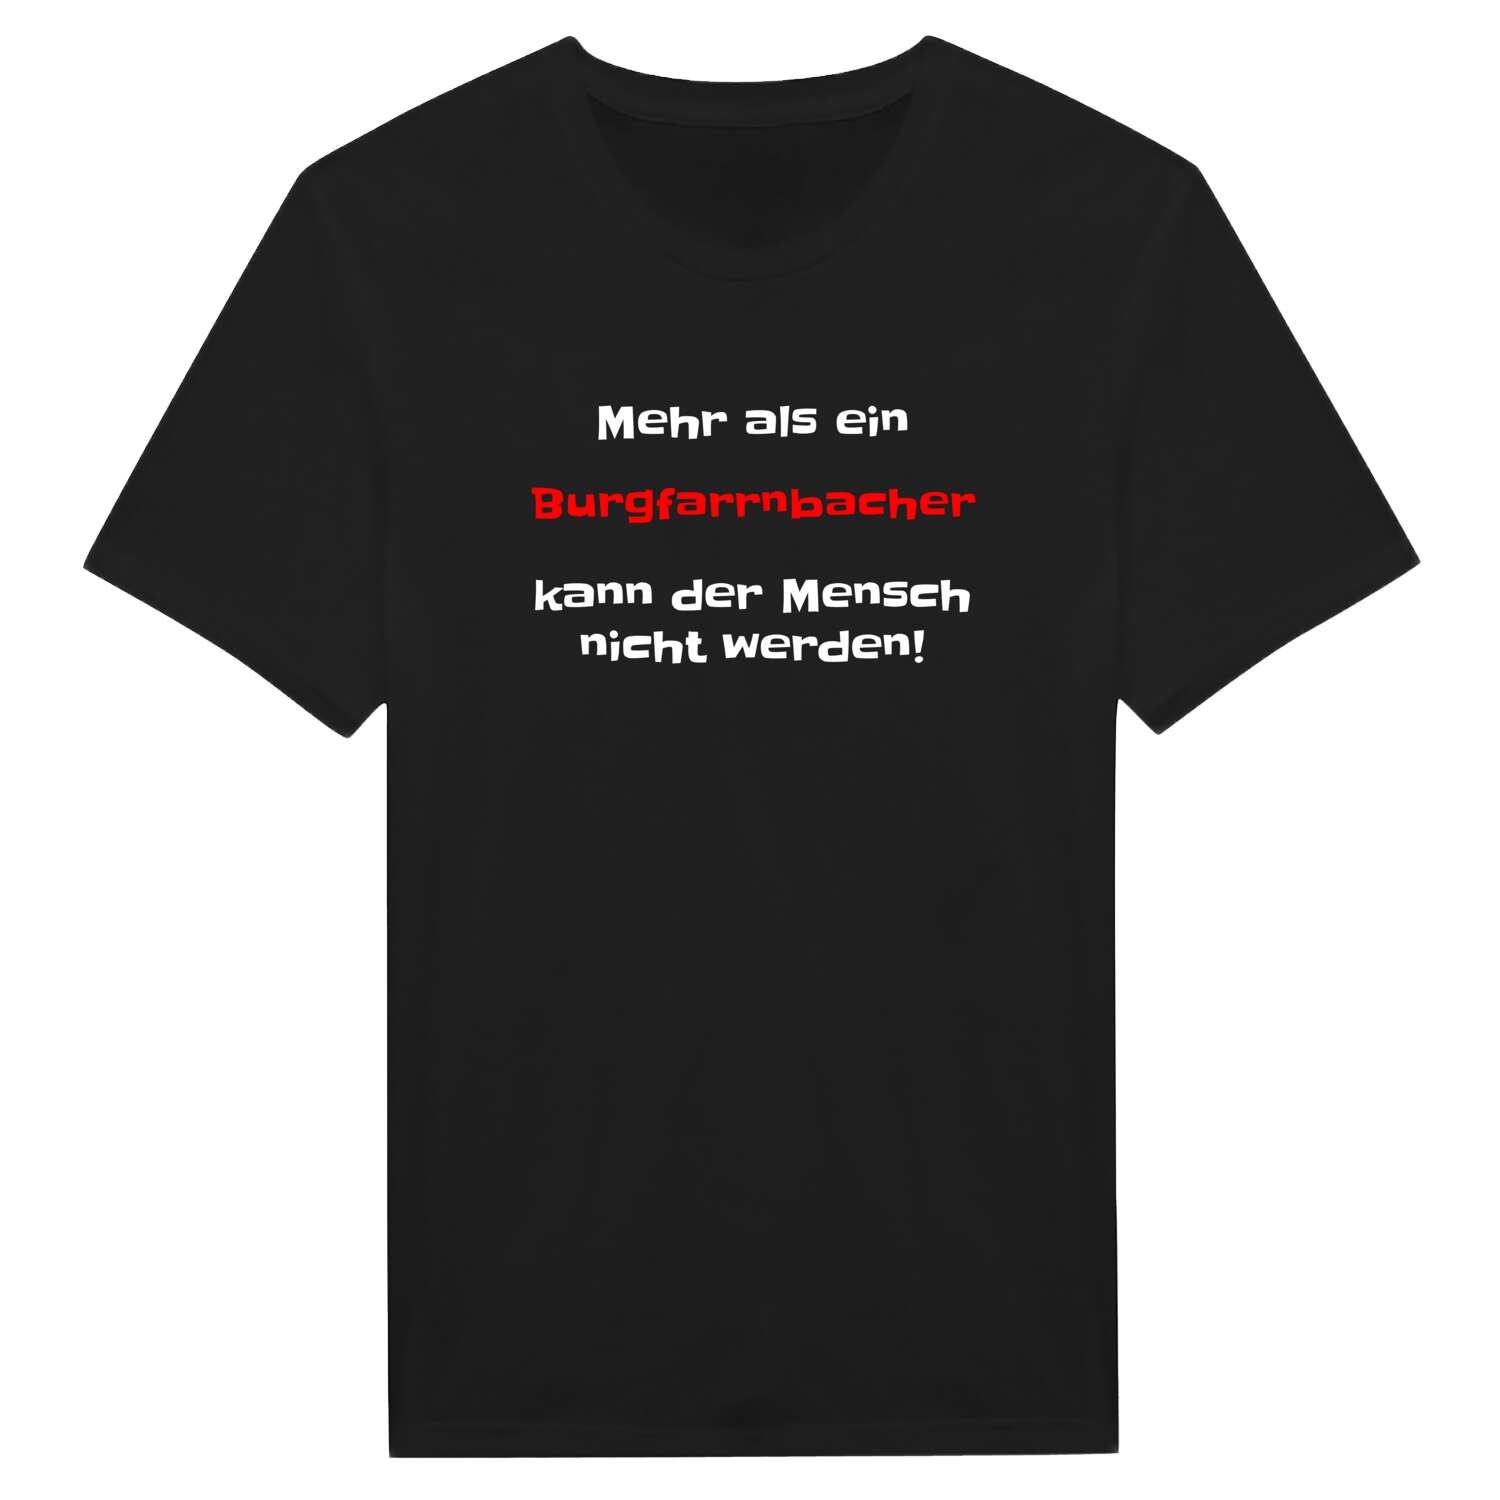 Burgfarrnbach T-Shirt »Mehr als ein«